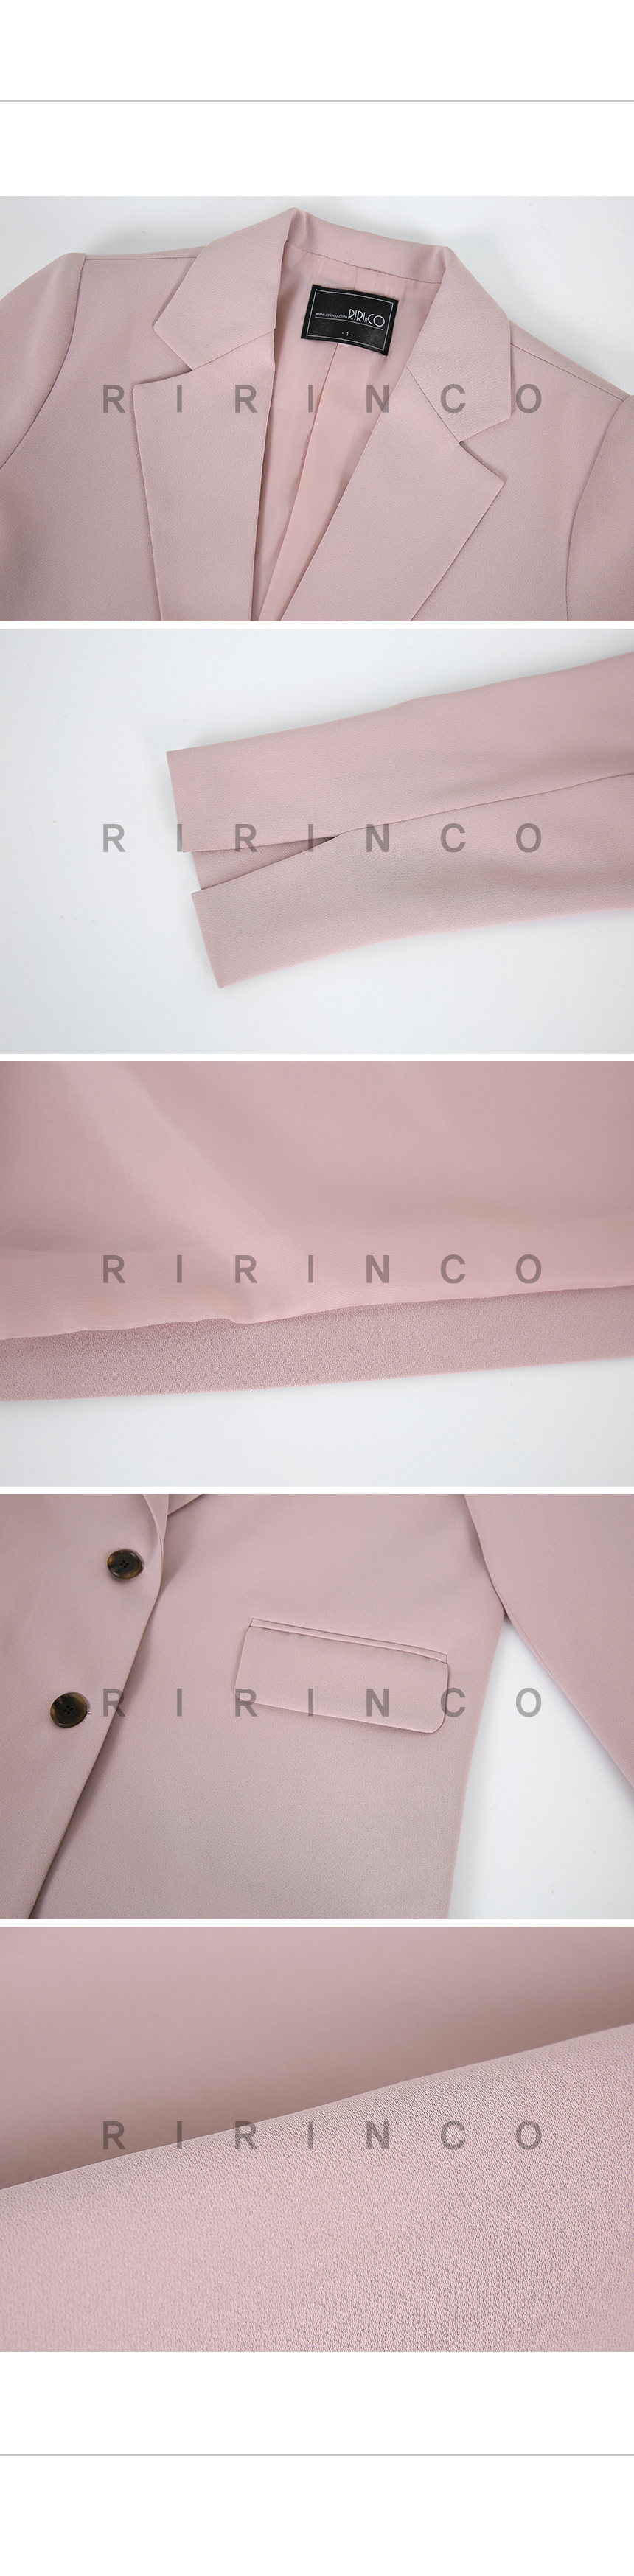 RIRINCO セットアップカラーネックジャケット